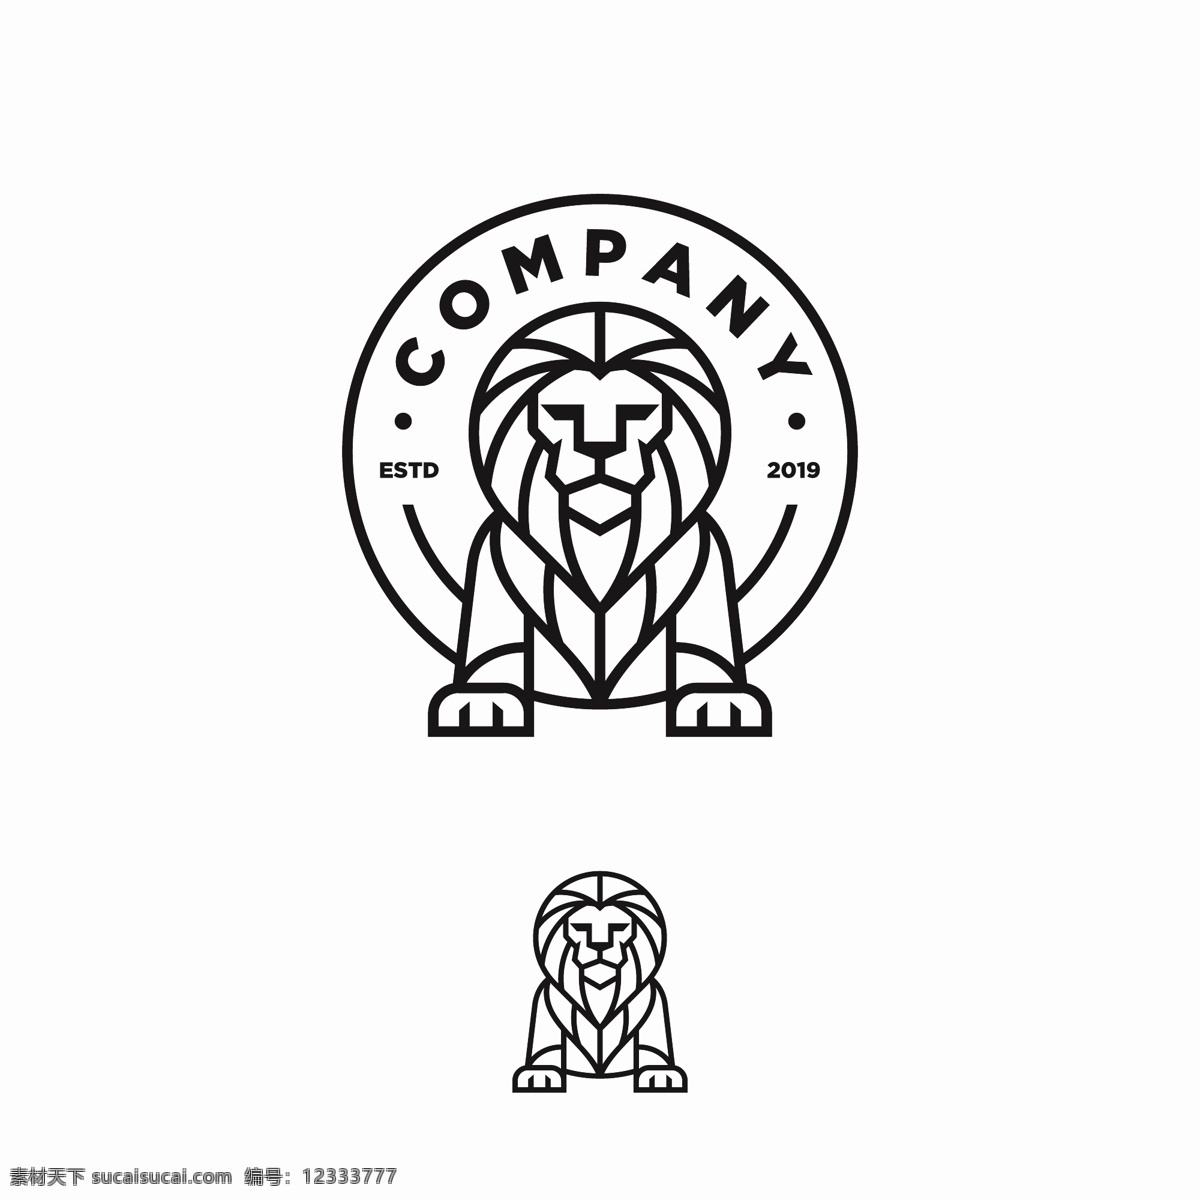 狮子图标 狮子头像 标志 logo雄狮 狮子 雄狮 狮子图腾 美洲狮 凶恶狮子 雄厚 图腾 动物图腾 公狮 金狮 彩色狮子 金色狮子 狮子头 狮子手绘 卡通狮子 狮子插画 动物插画 动物卡通 狮子商标 狮子logo 狮子卡片 logo设计